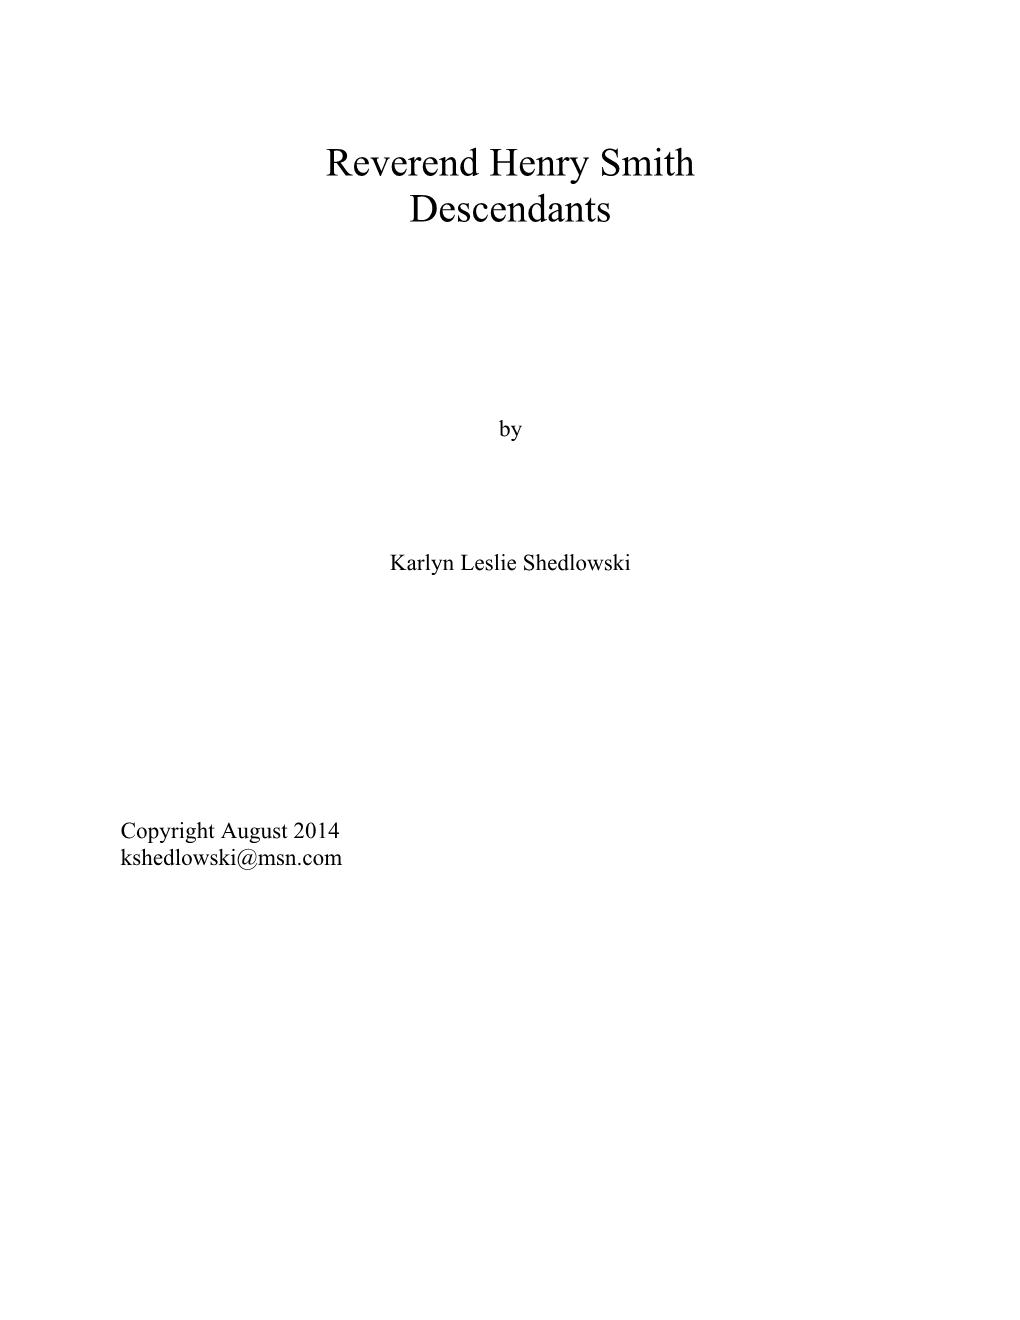 Reverend Henry Smith Descendants